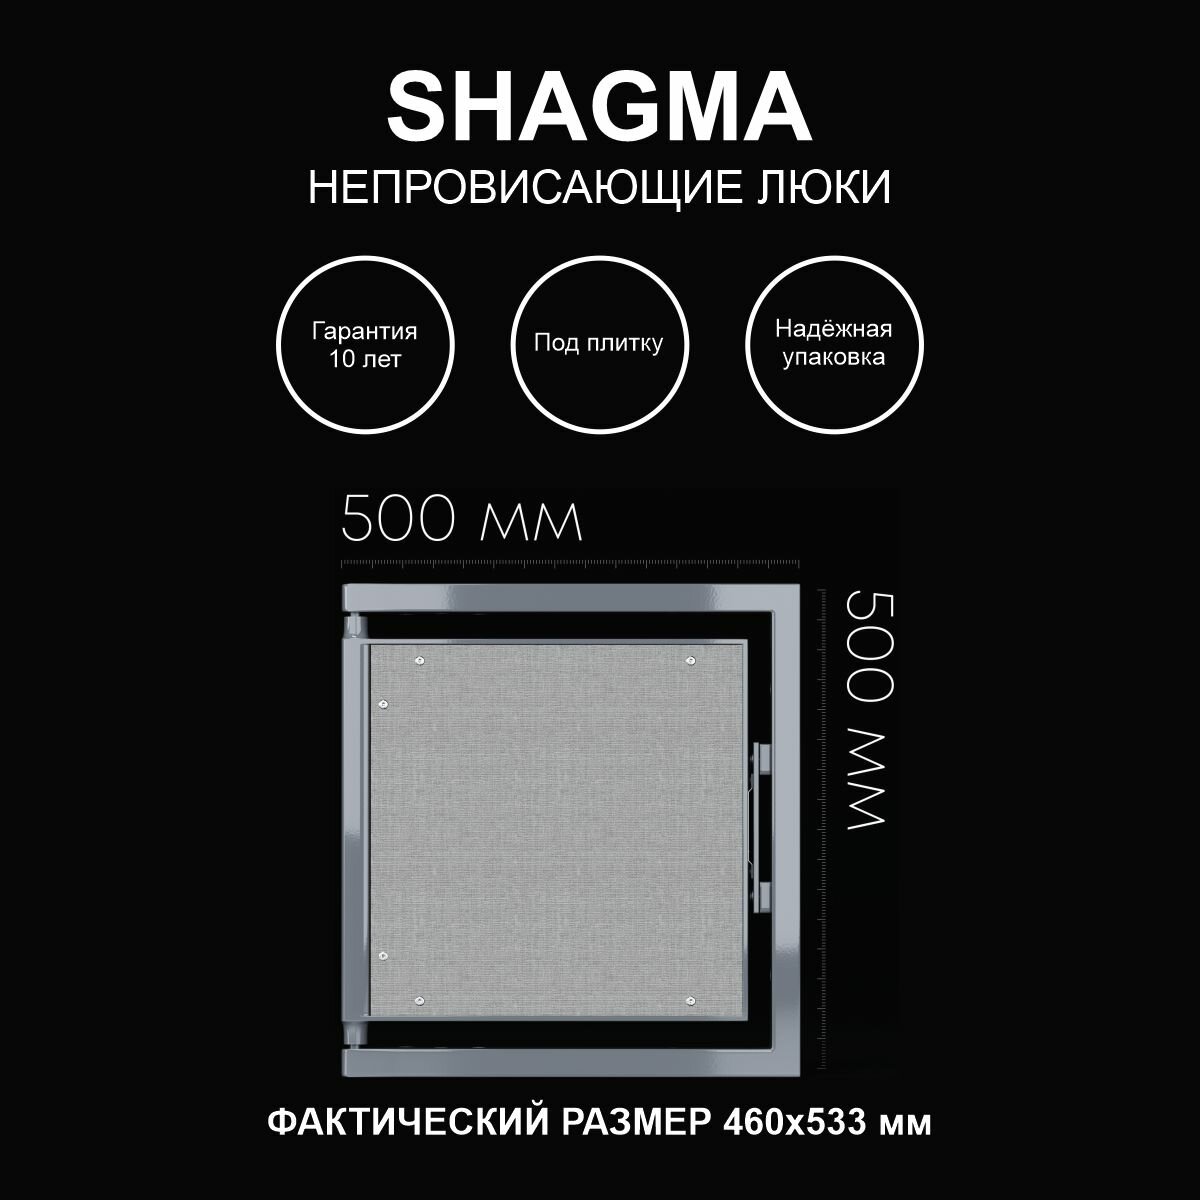 Люк ревизионный под плитку 500х500 мм одностворчатый сантехнический настенный фактический размер 460(ширина) х 533(высота) мм SHAGMA